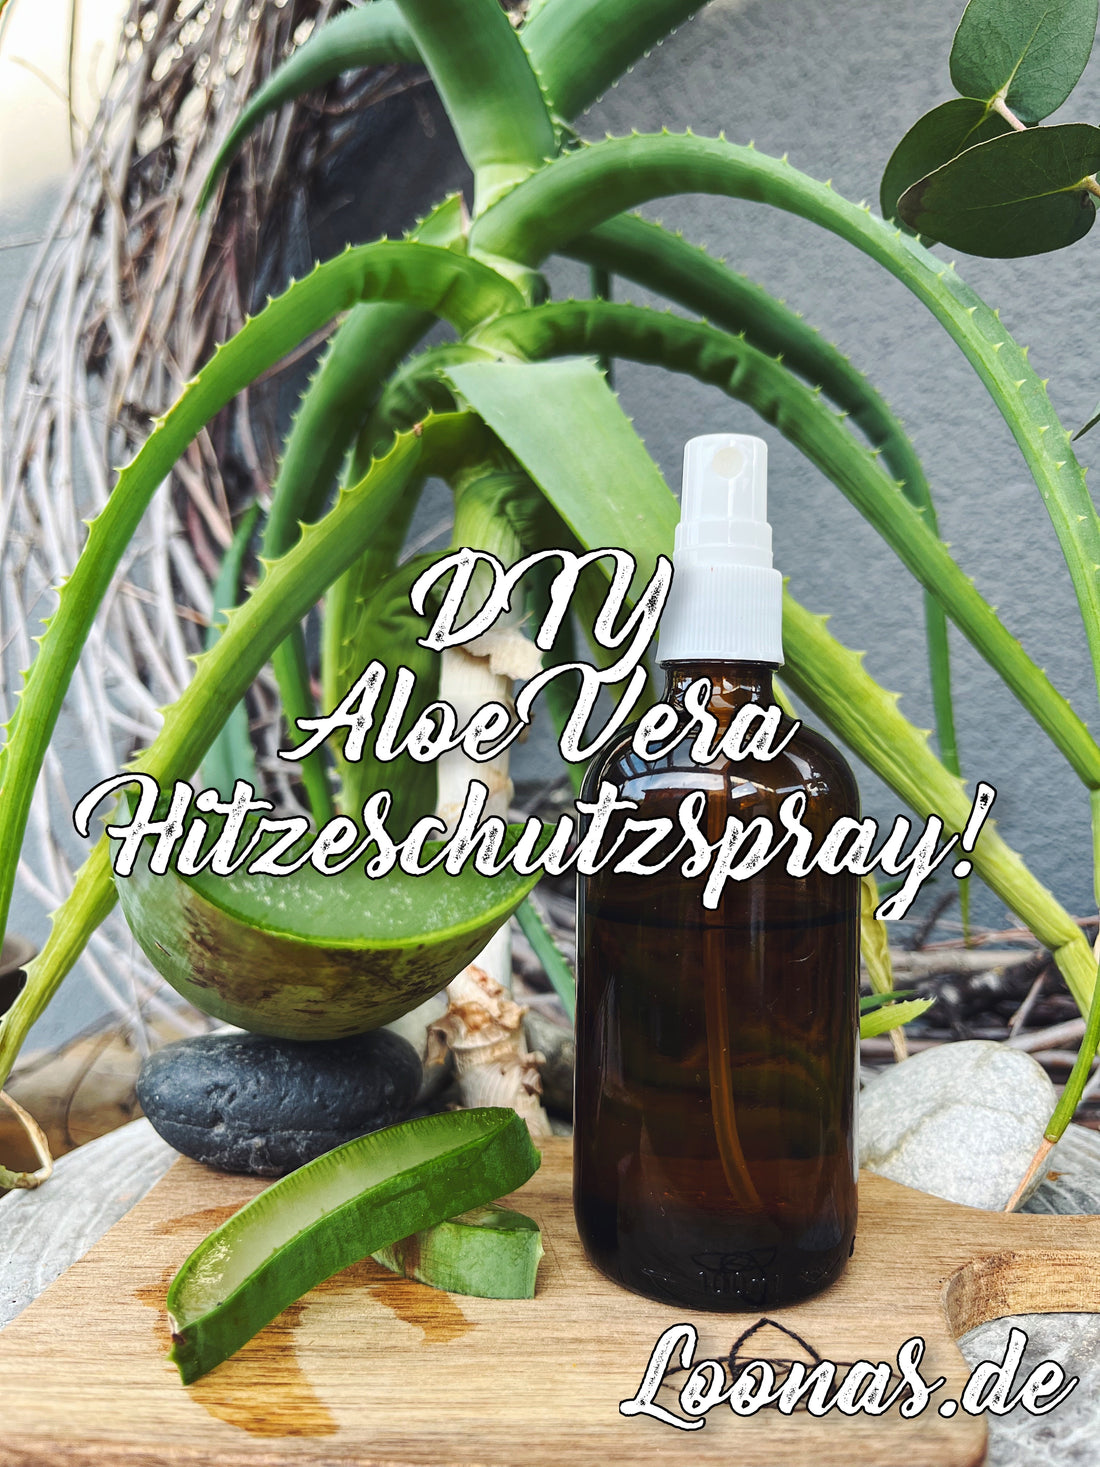 DIY Hitzeschutzspray mit pflegender Aloe Vera! 💚